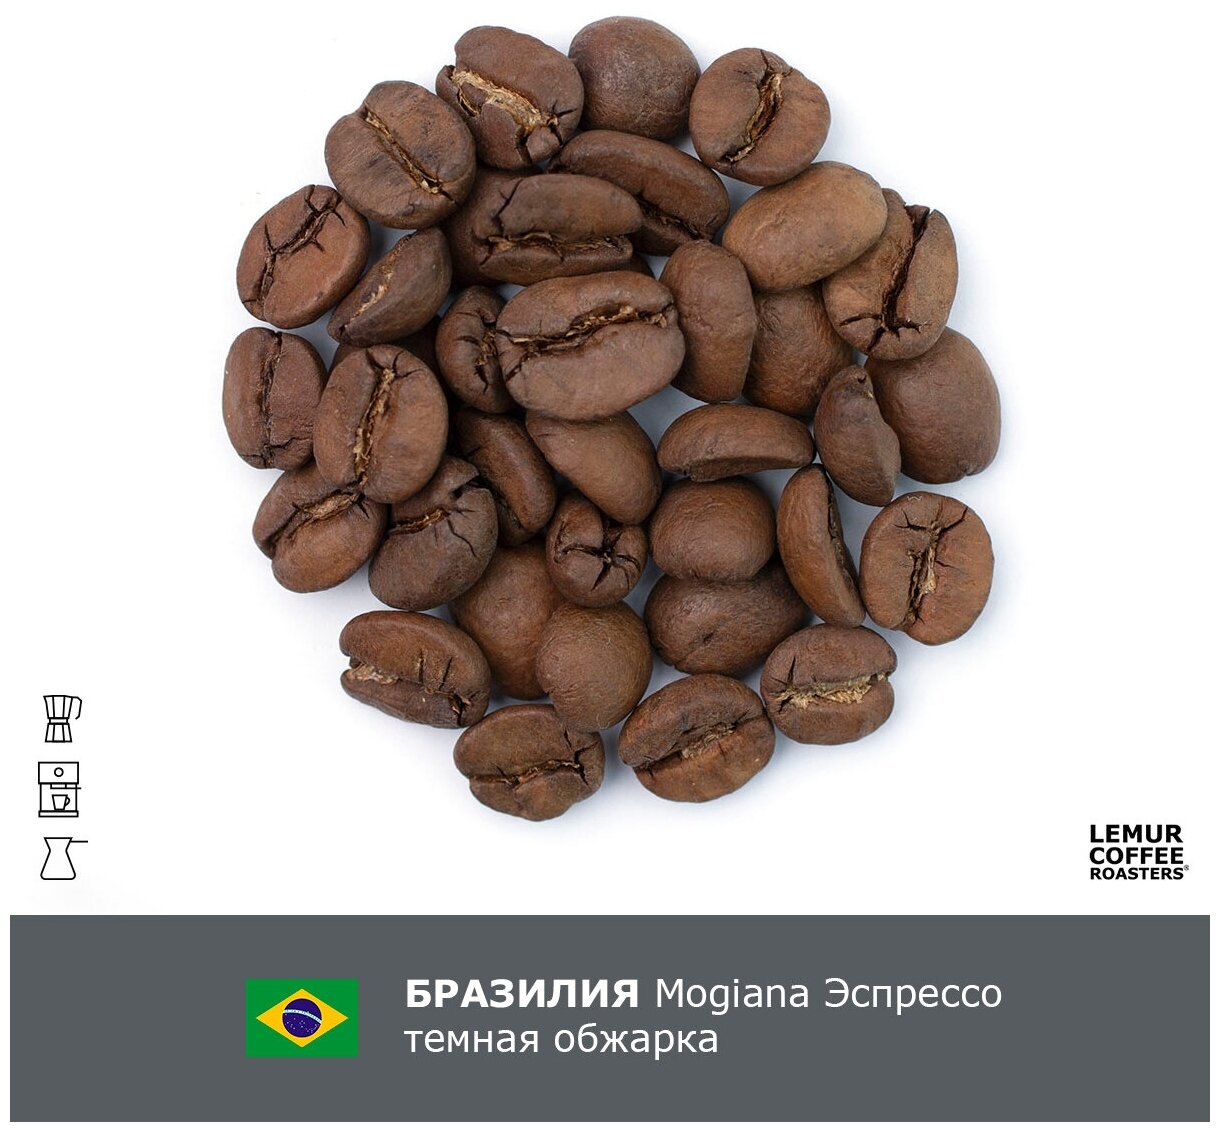 Свежеобжаренный кофе в зернах Бразилия Можиана Эспрессо Темная обжарка Lemur Coffee Roasters, 250 г